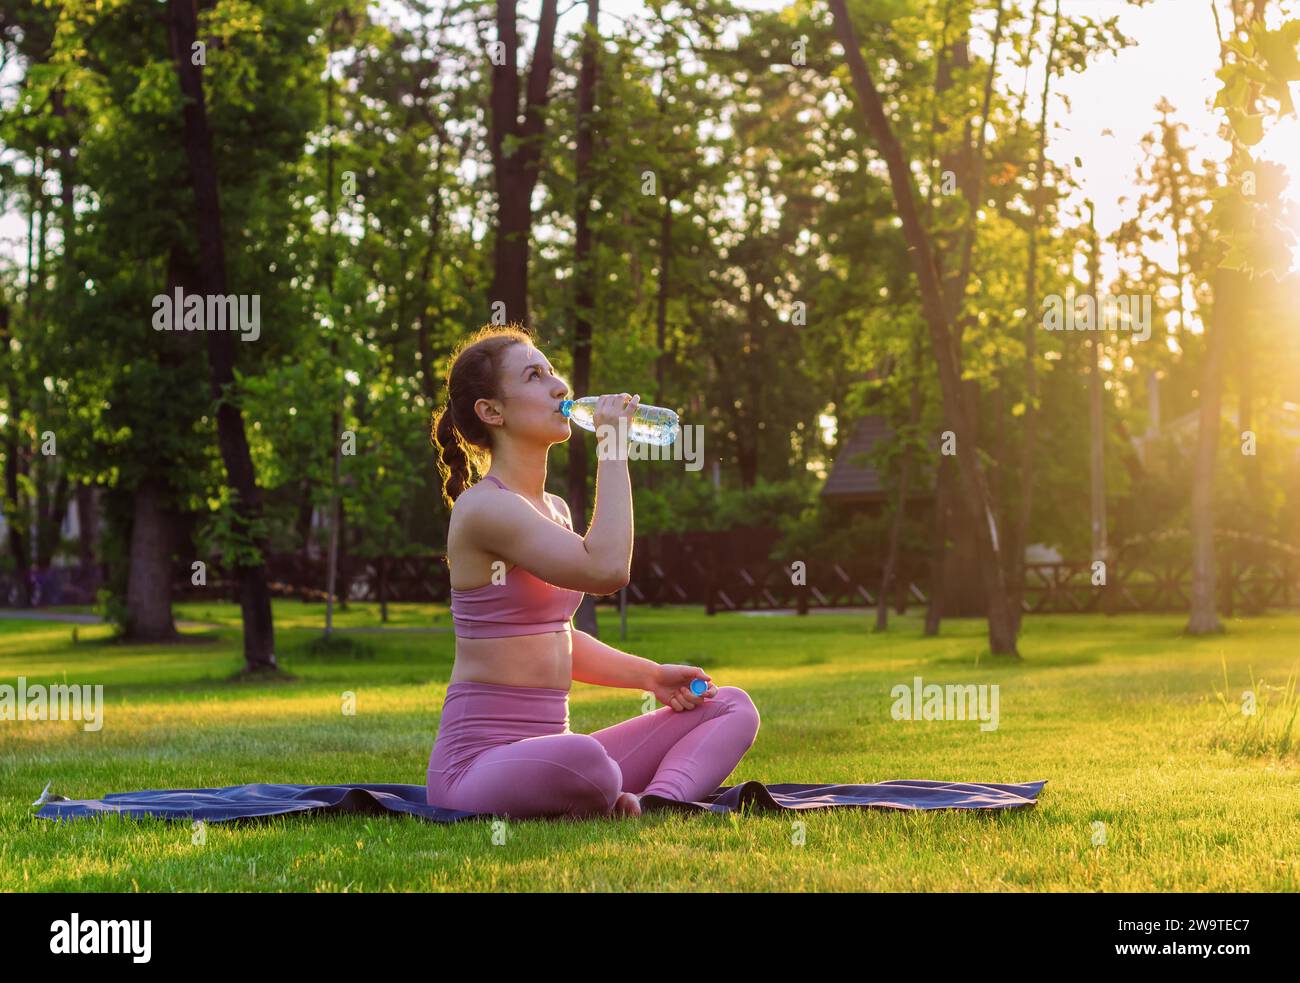 La giovane ragazza beve acqua mentre fa yoga all'aperto nel parco al tramonto. Concetto di stile di vita sano. Foto Stock